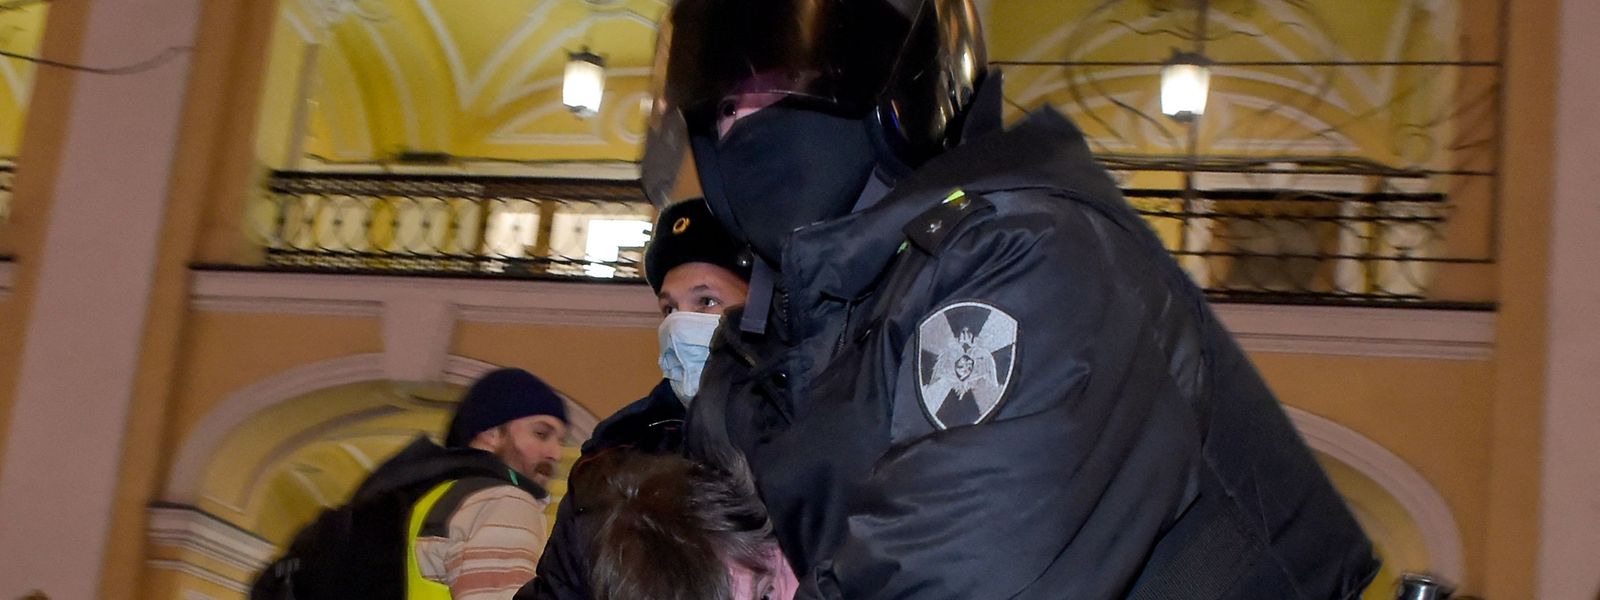 Imagem de detenções na Rússia em manifestações organizadas no início da invasão russa.